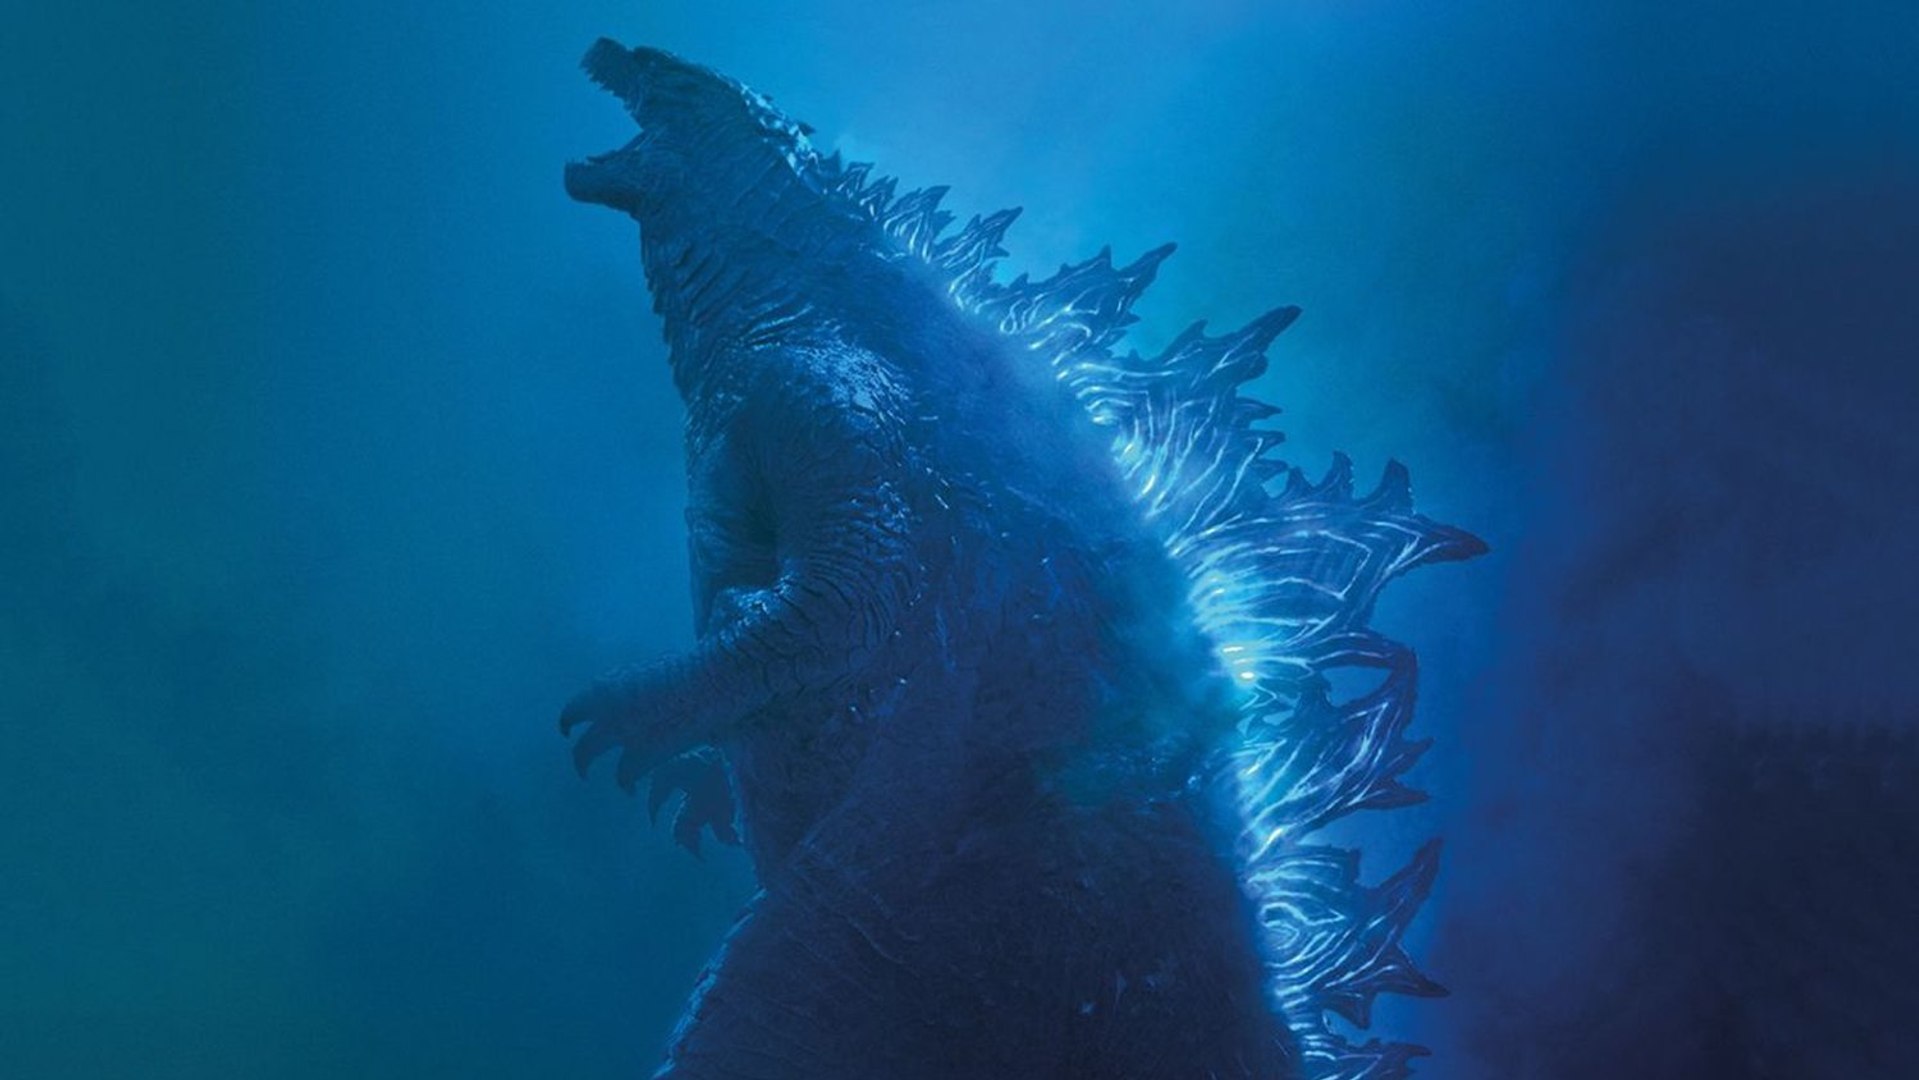 Teaser de Godzilla 2 idolatra o monstro: “Longa vida ao Rei”